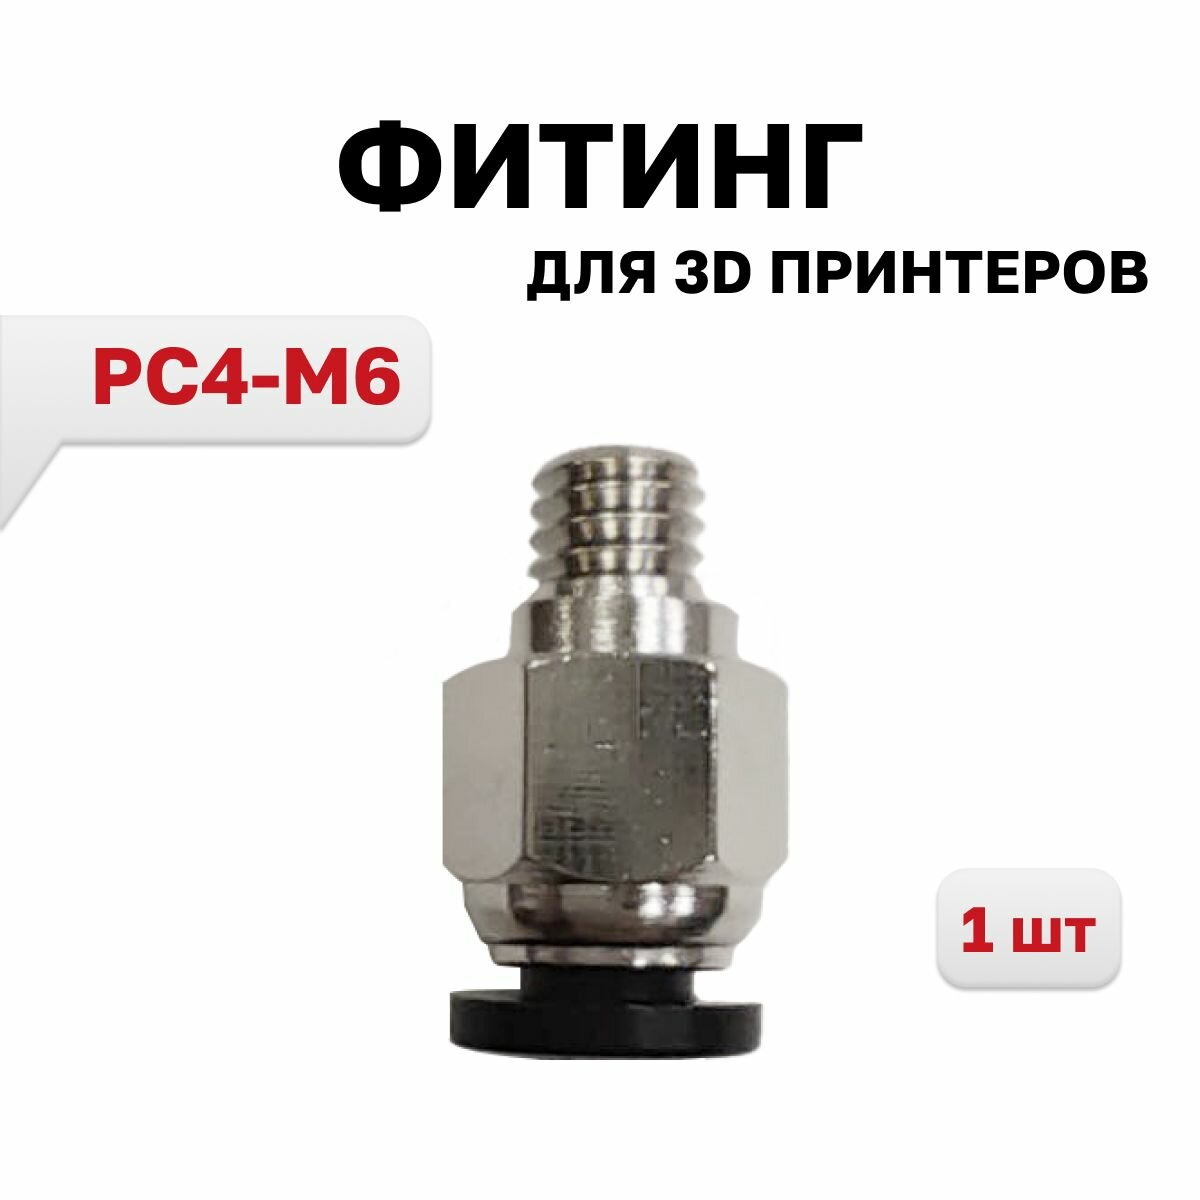 Фитинг PC4-M6 для 3D принтера под тефлоновую трубку 2х4 мм, 1 шт.